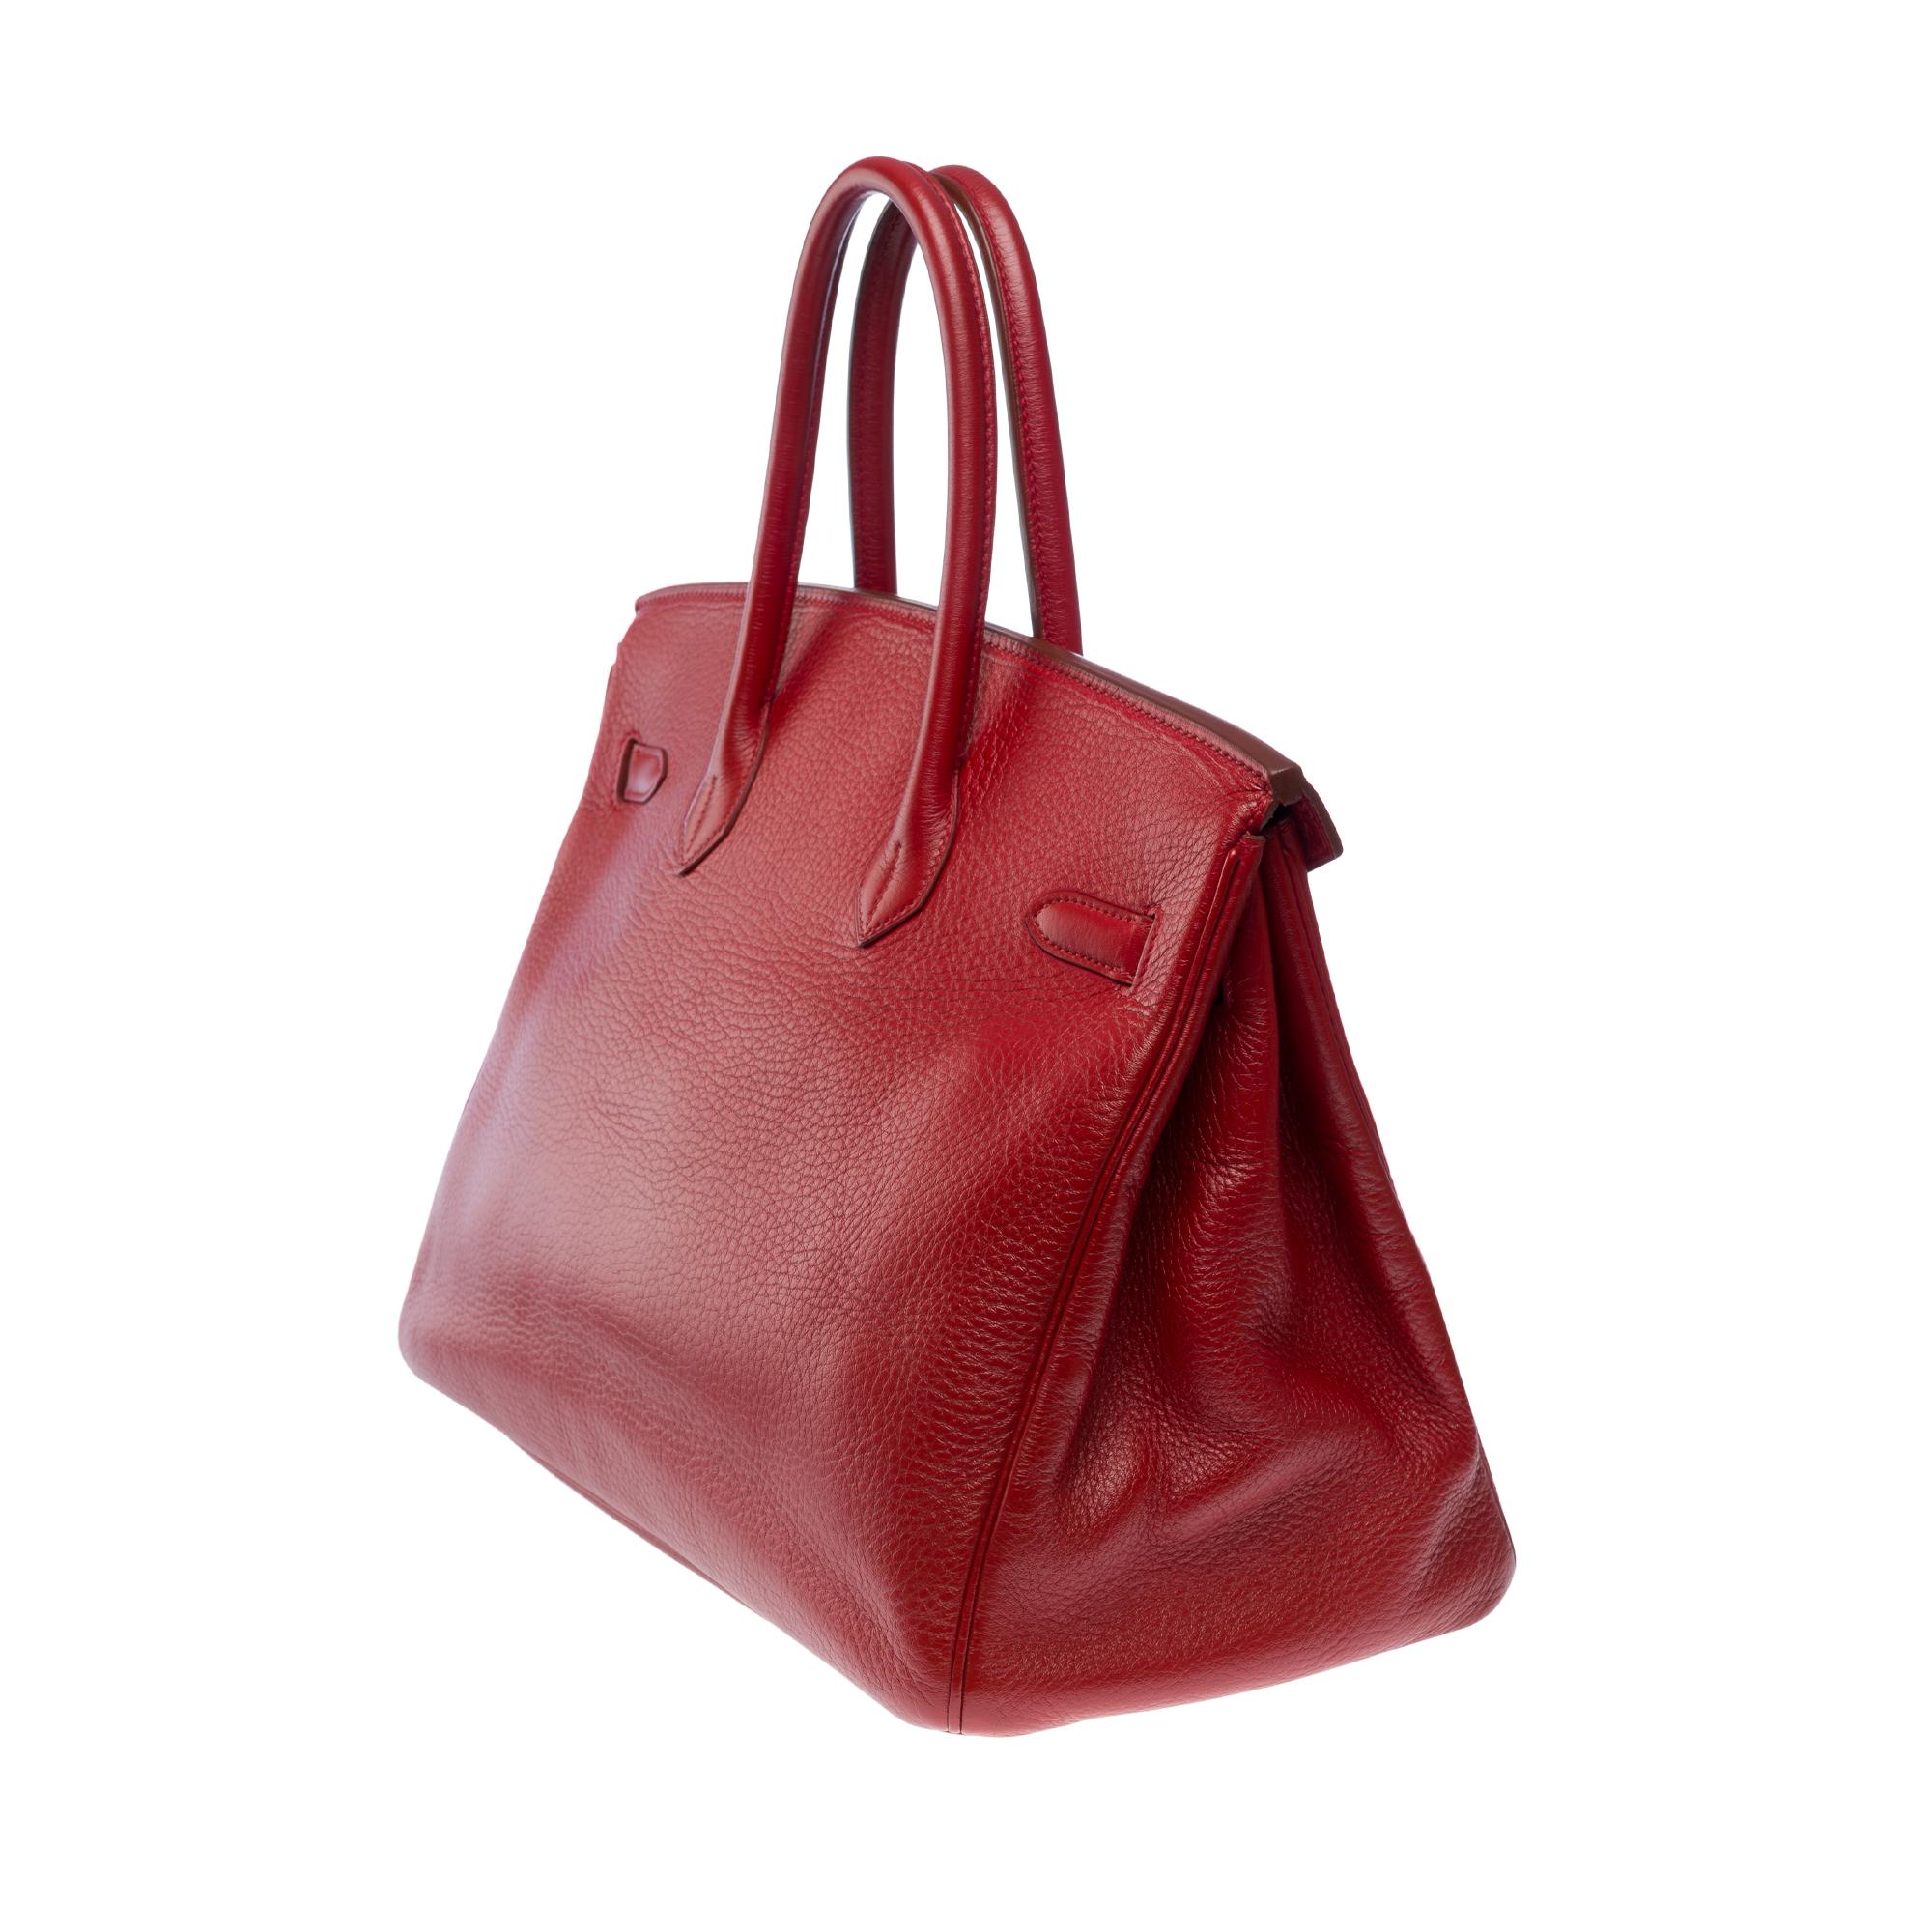 Atemberaubende Hermès Birkin 35 Handtasche in Rouge Garance Togo Leder, GHW für Damen oder Herren im Angebot